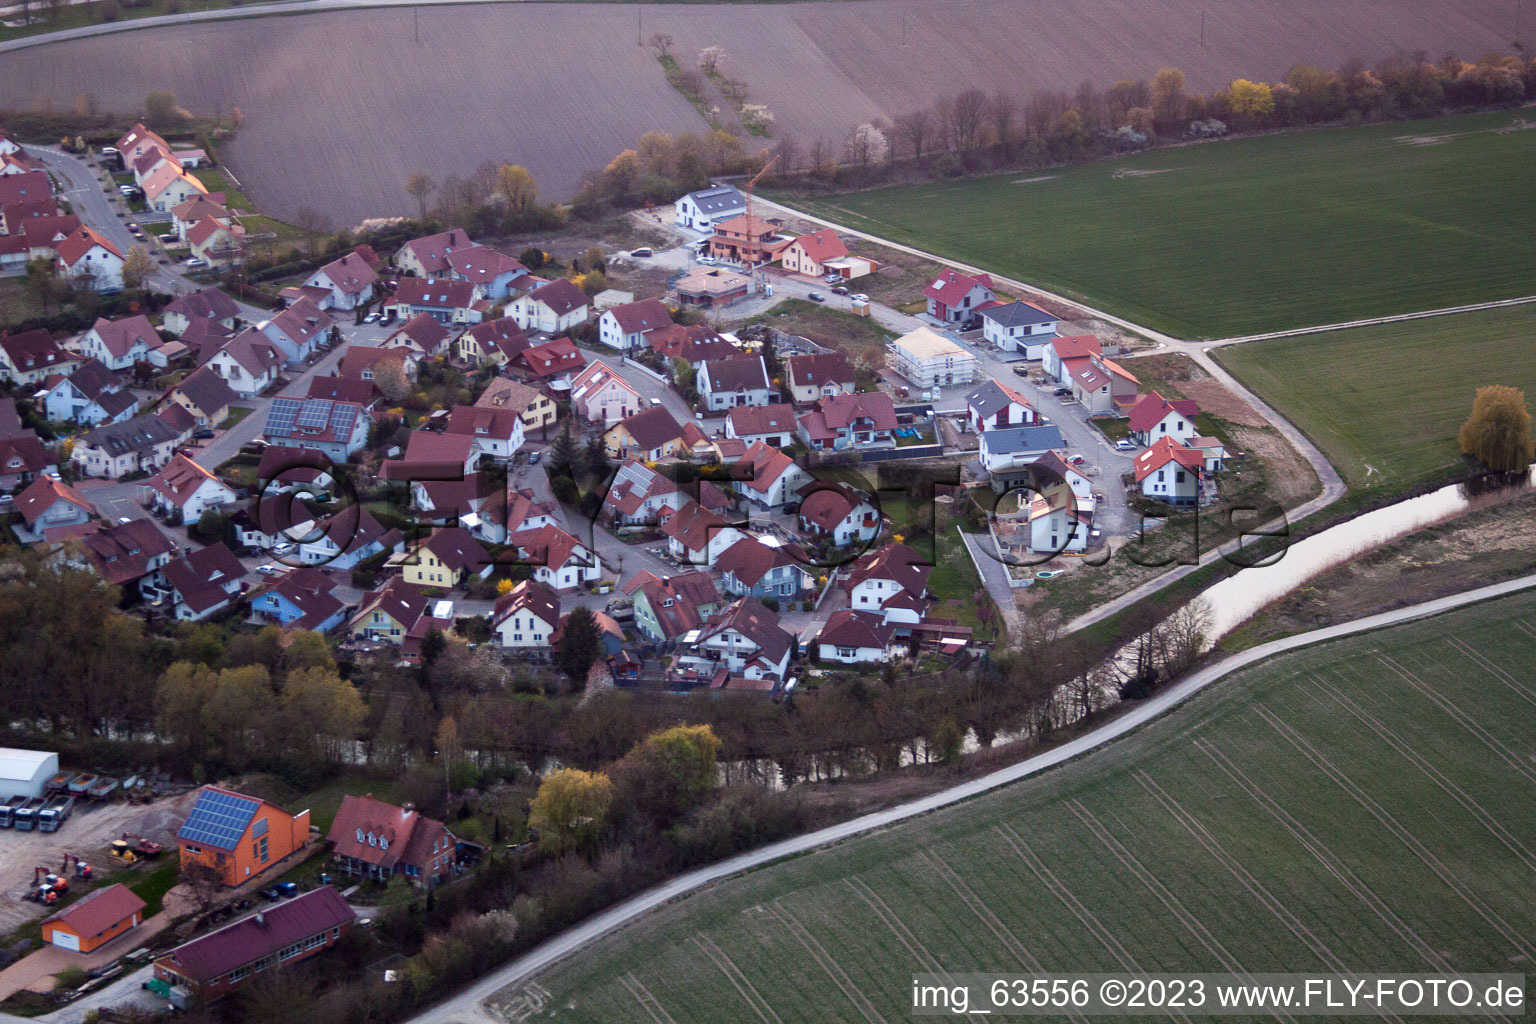 Leimersheim im Bundesland Rheinland-Pfalz, Deutschland aus der Luft betrachtet